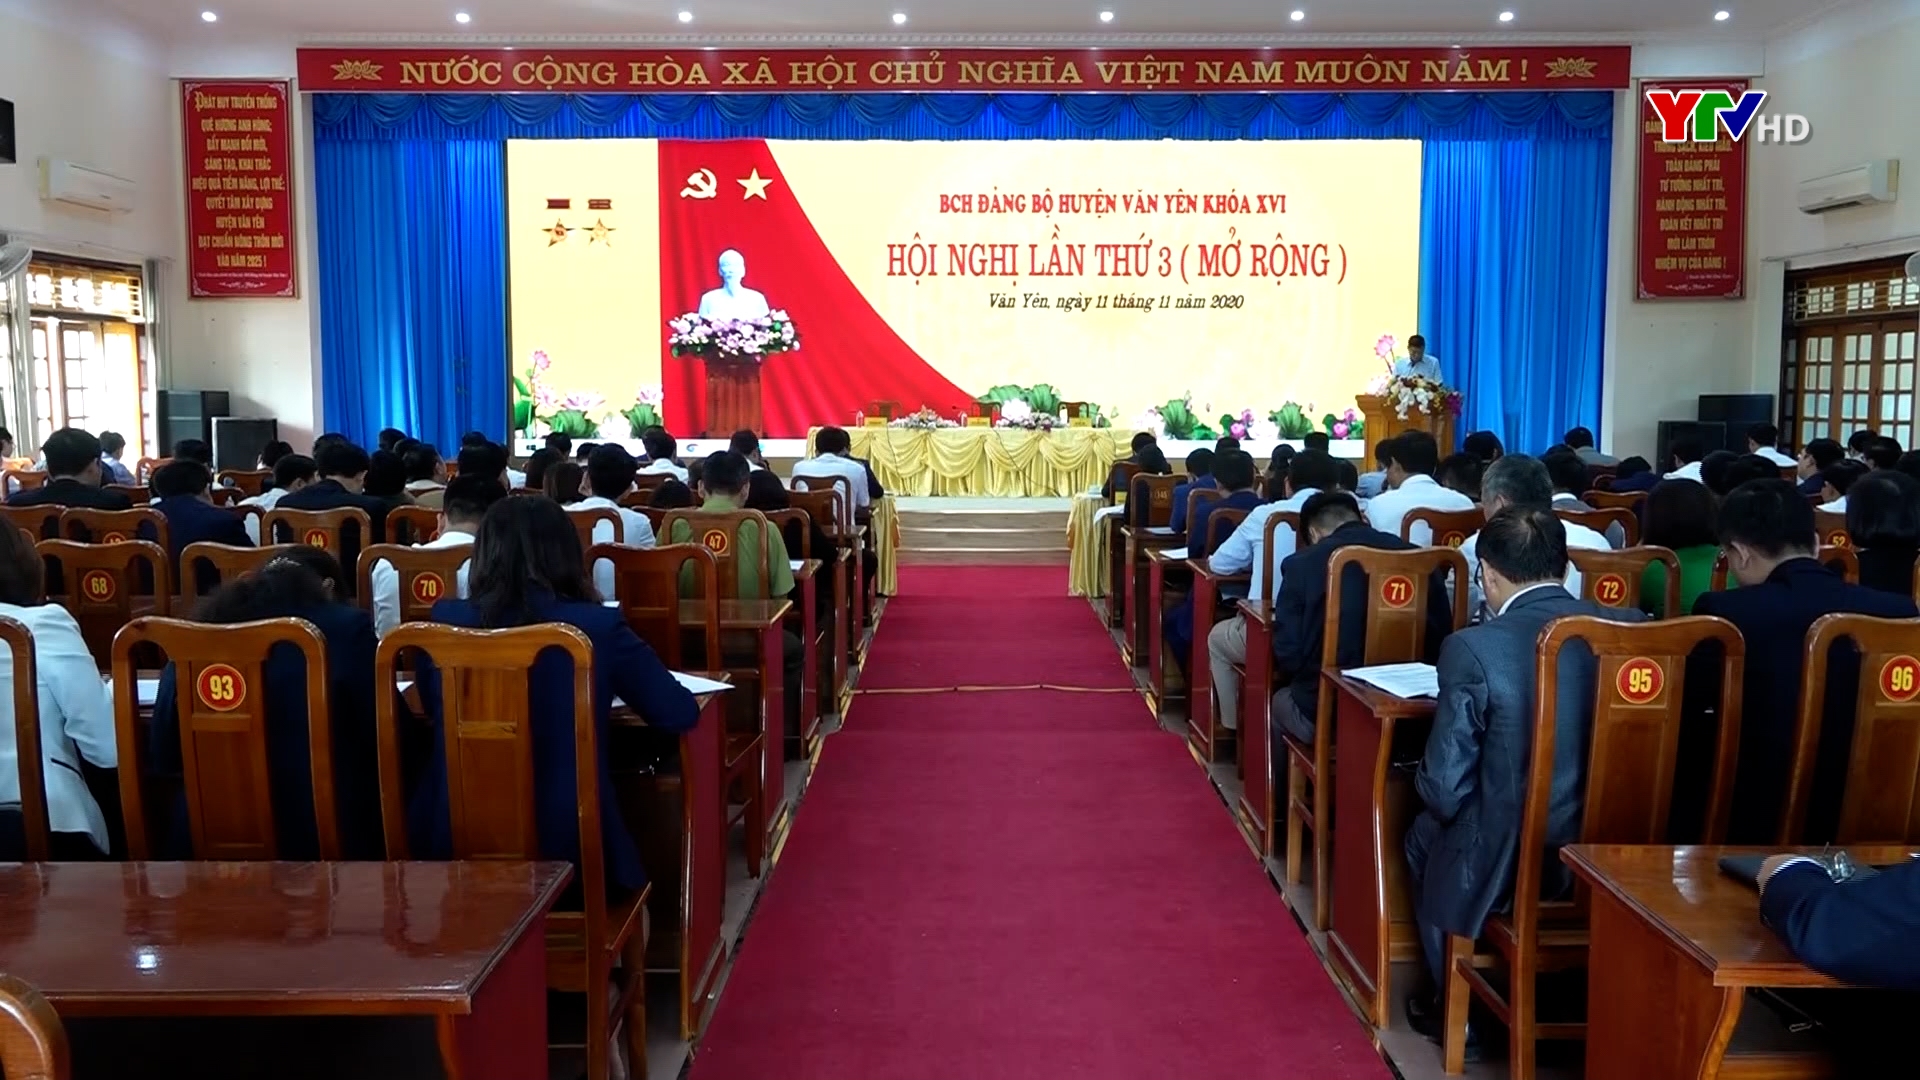 Hội nghị lần thứ 3 - Ban Chấp hành Đảng bộ huyện Văn Yên khóa XVI